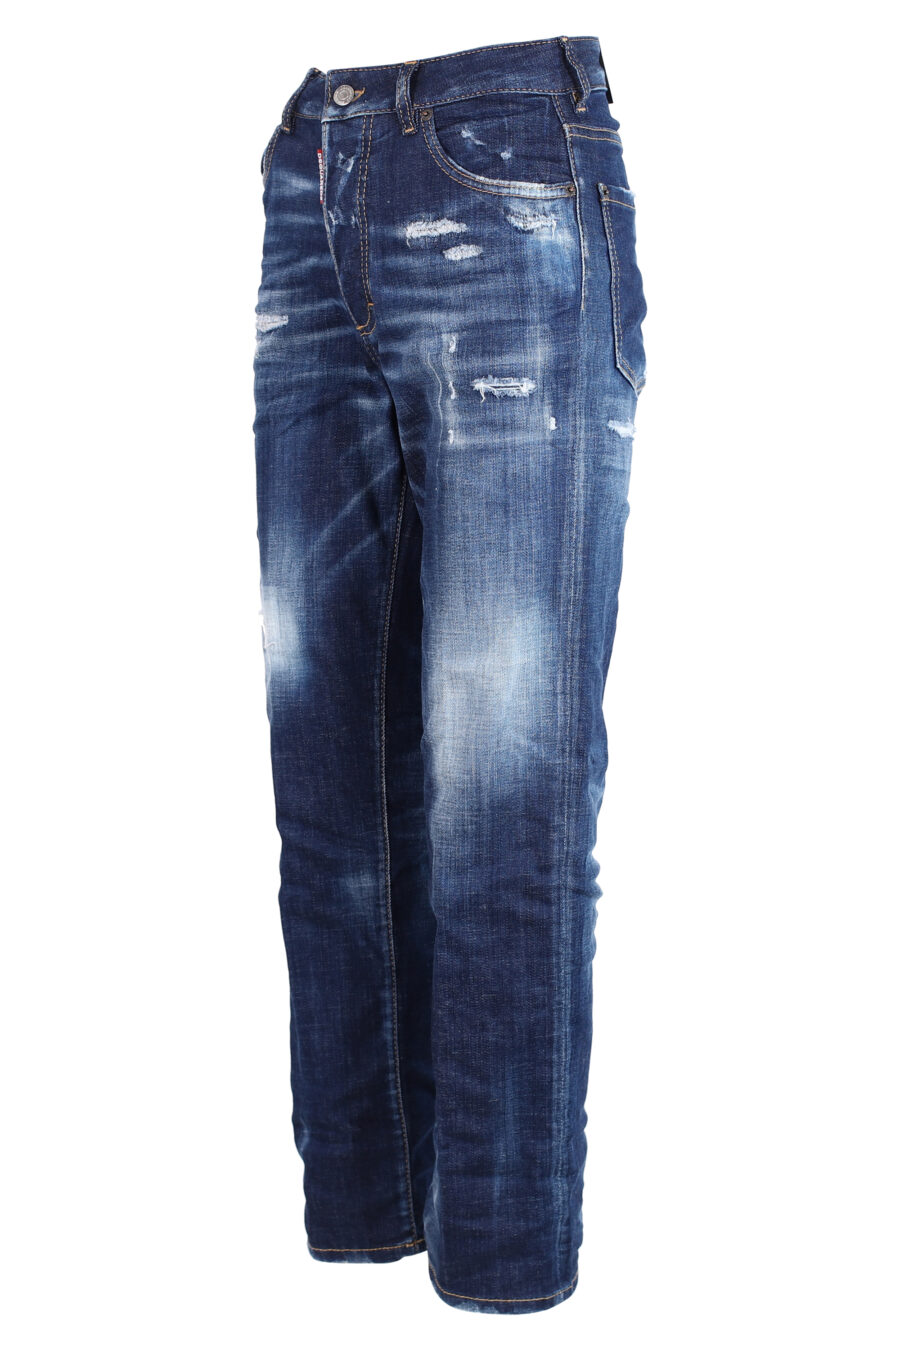 Jeans bleus "Boston Jean" - IMG 3305